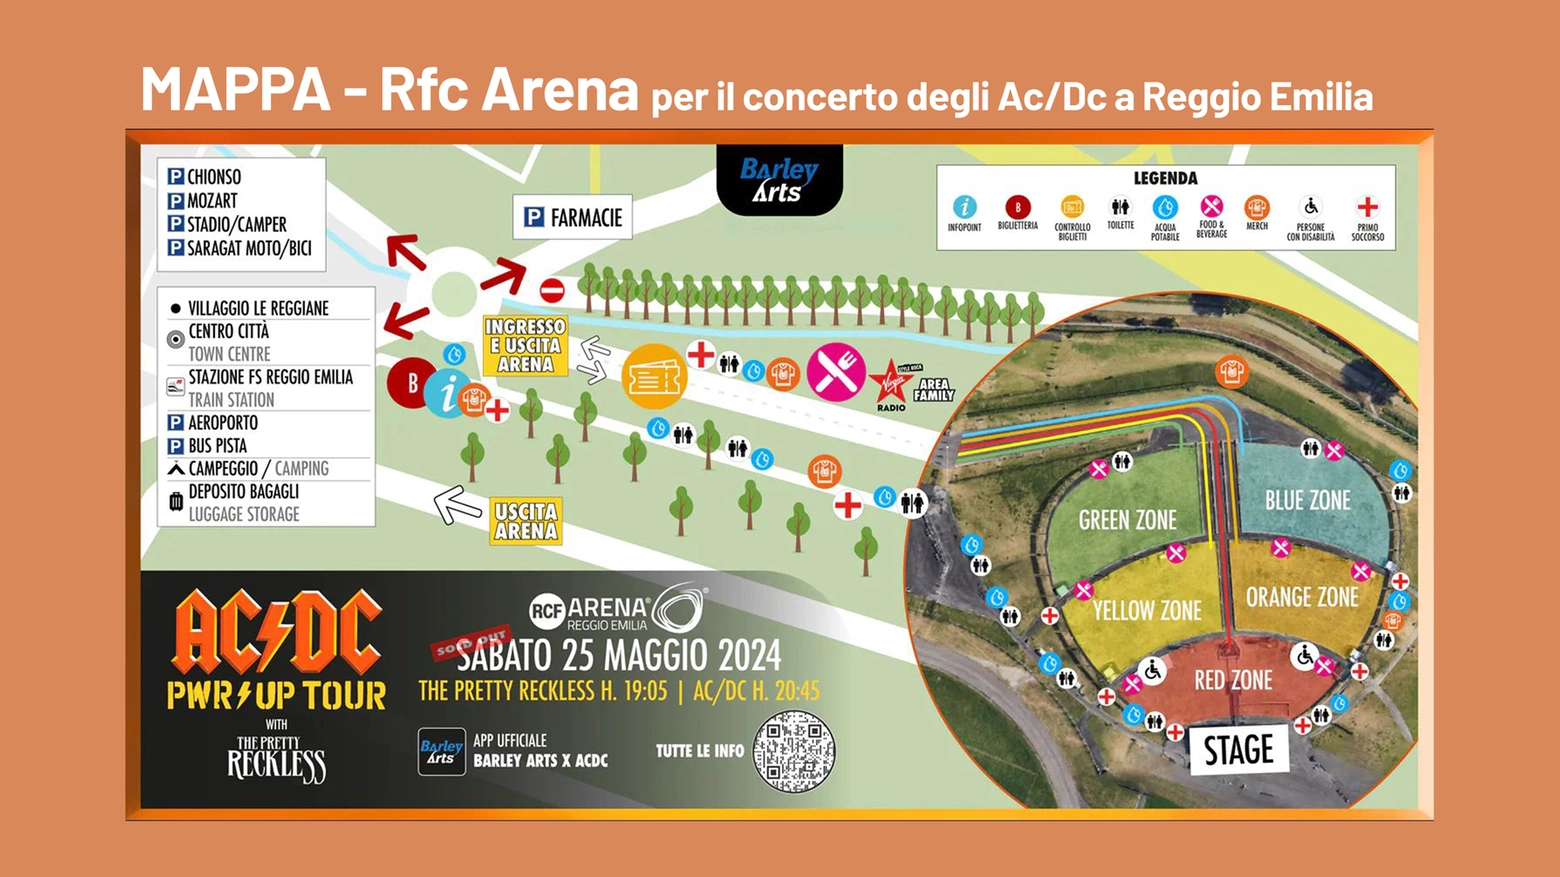 Gli AC/DC a Reggio Emilia per il mega concerto del 25 maggio